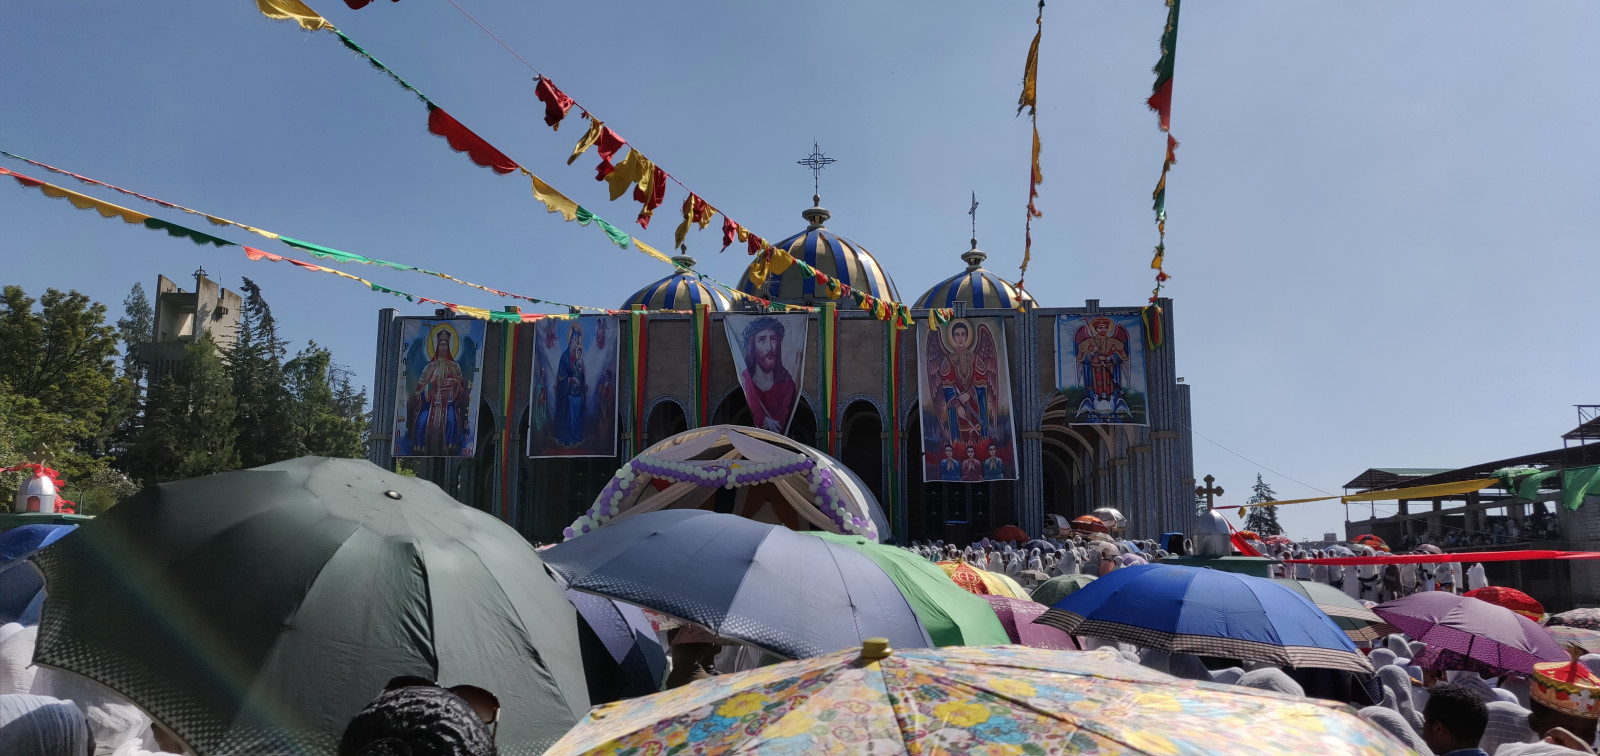 Religie boomt in “seculier” Ethiopië